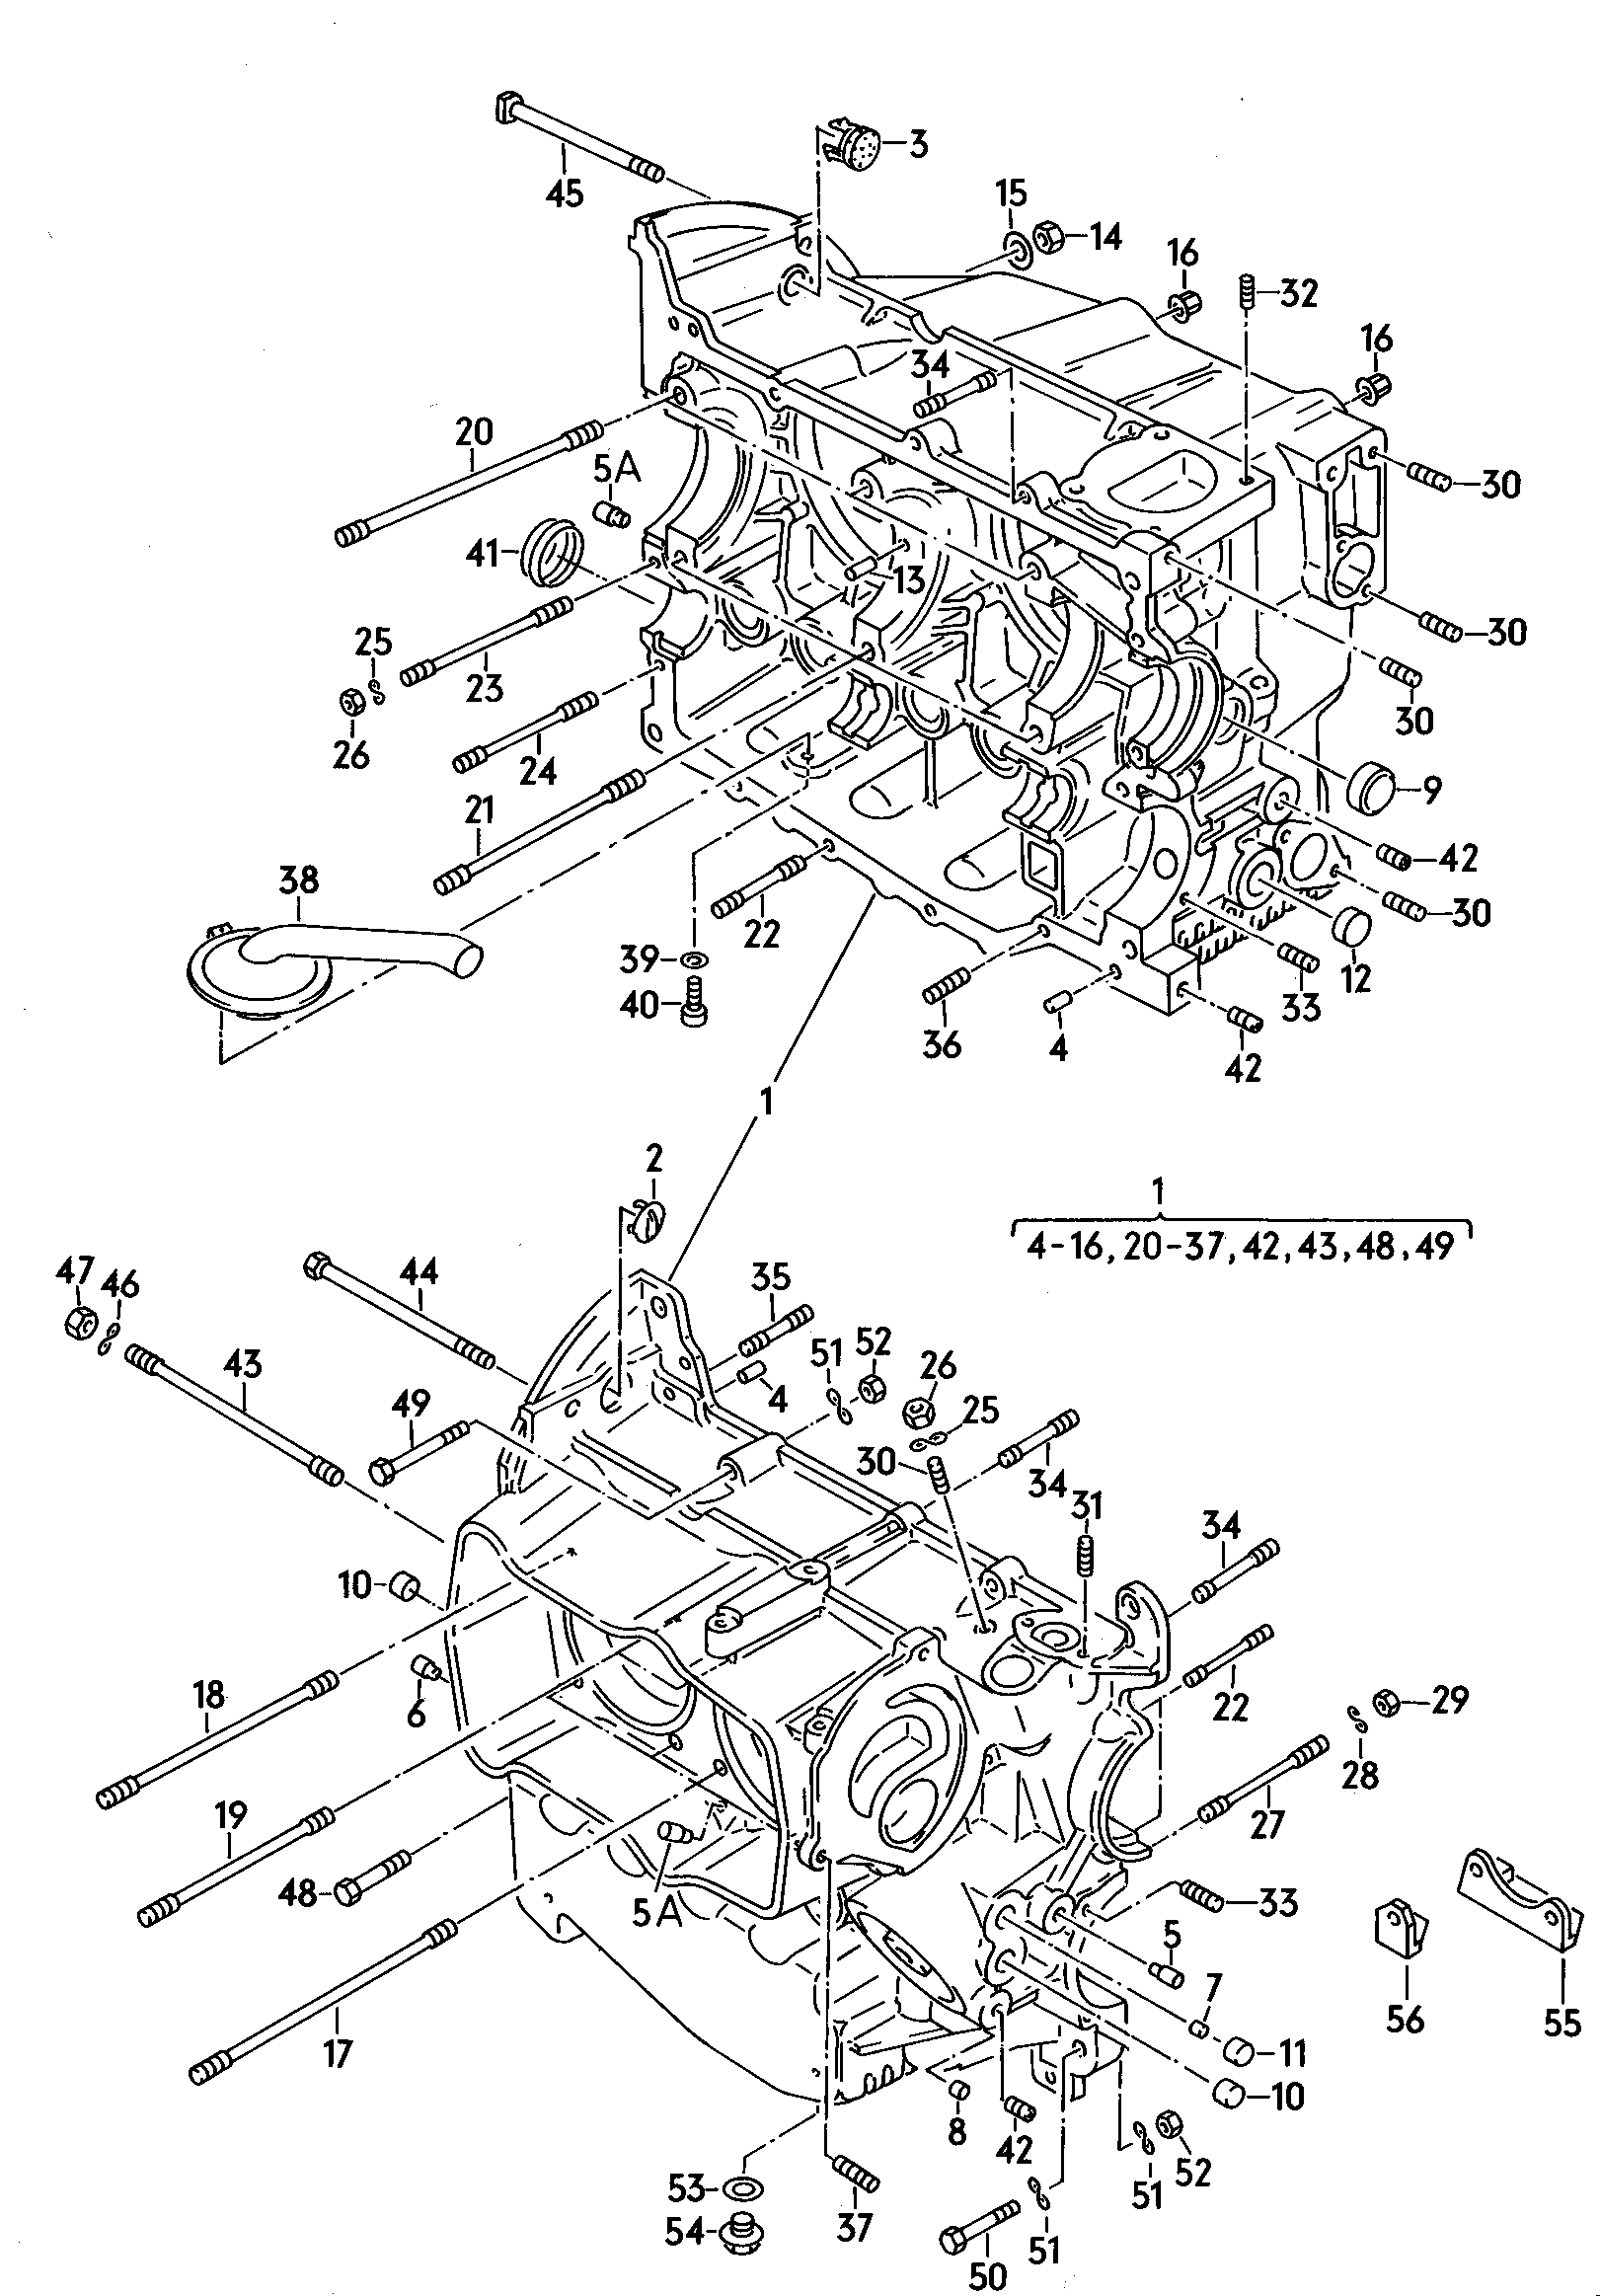 Basamento 1900 - 2100 cc - Typ 2/syncro - t2